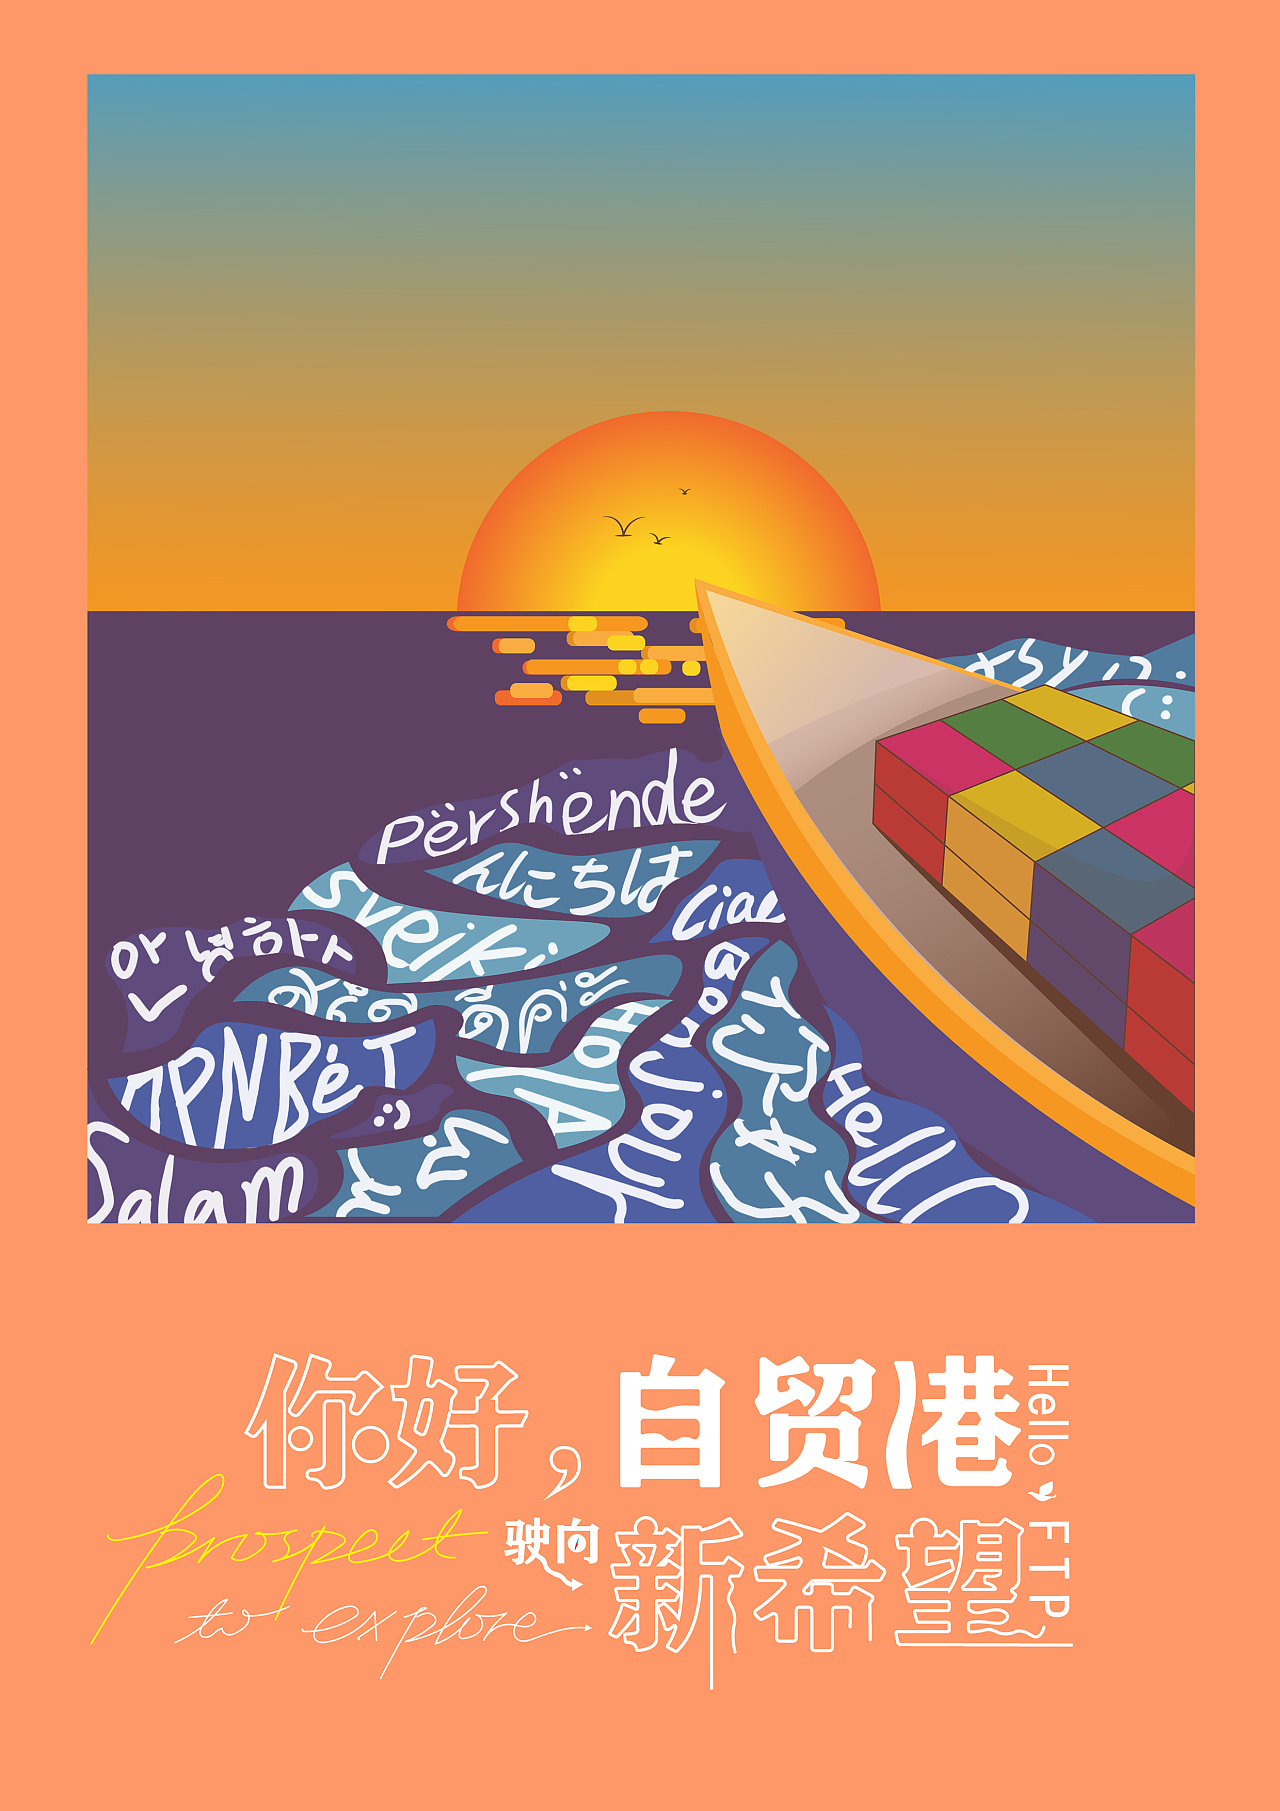 海南自贸港宣传海报图片